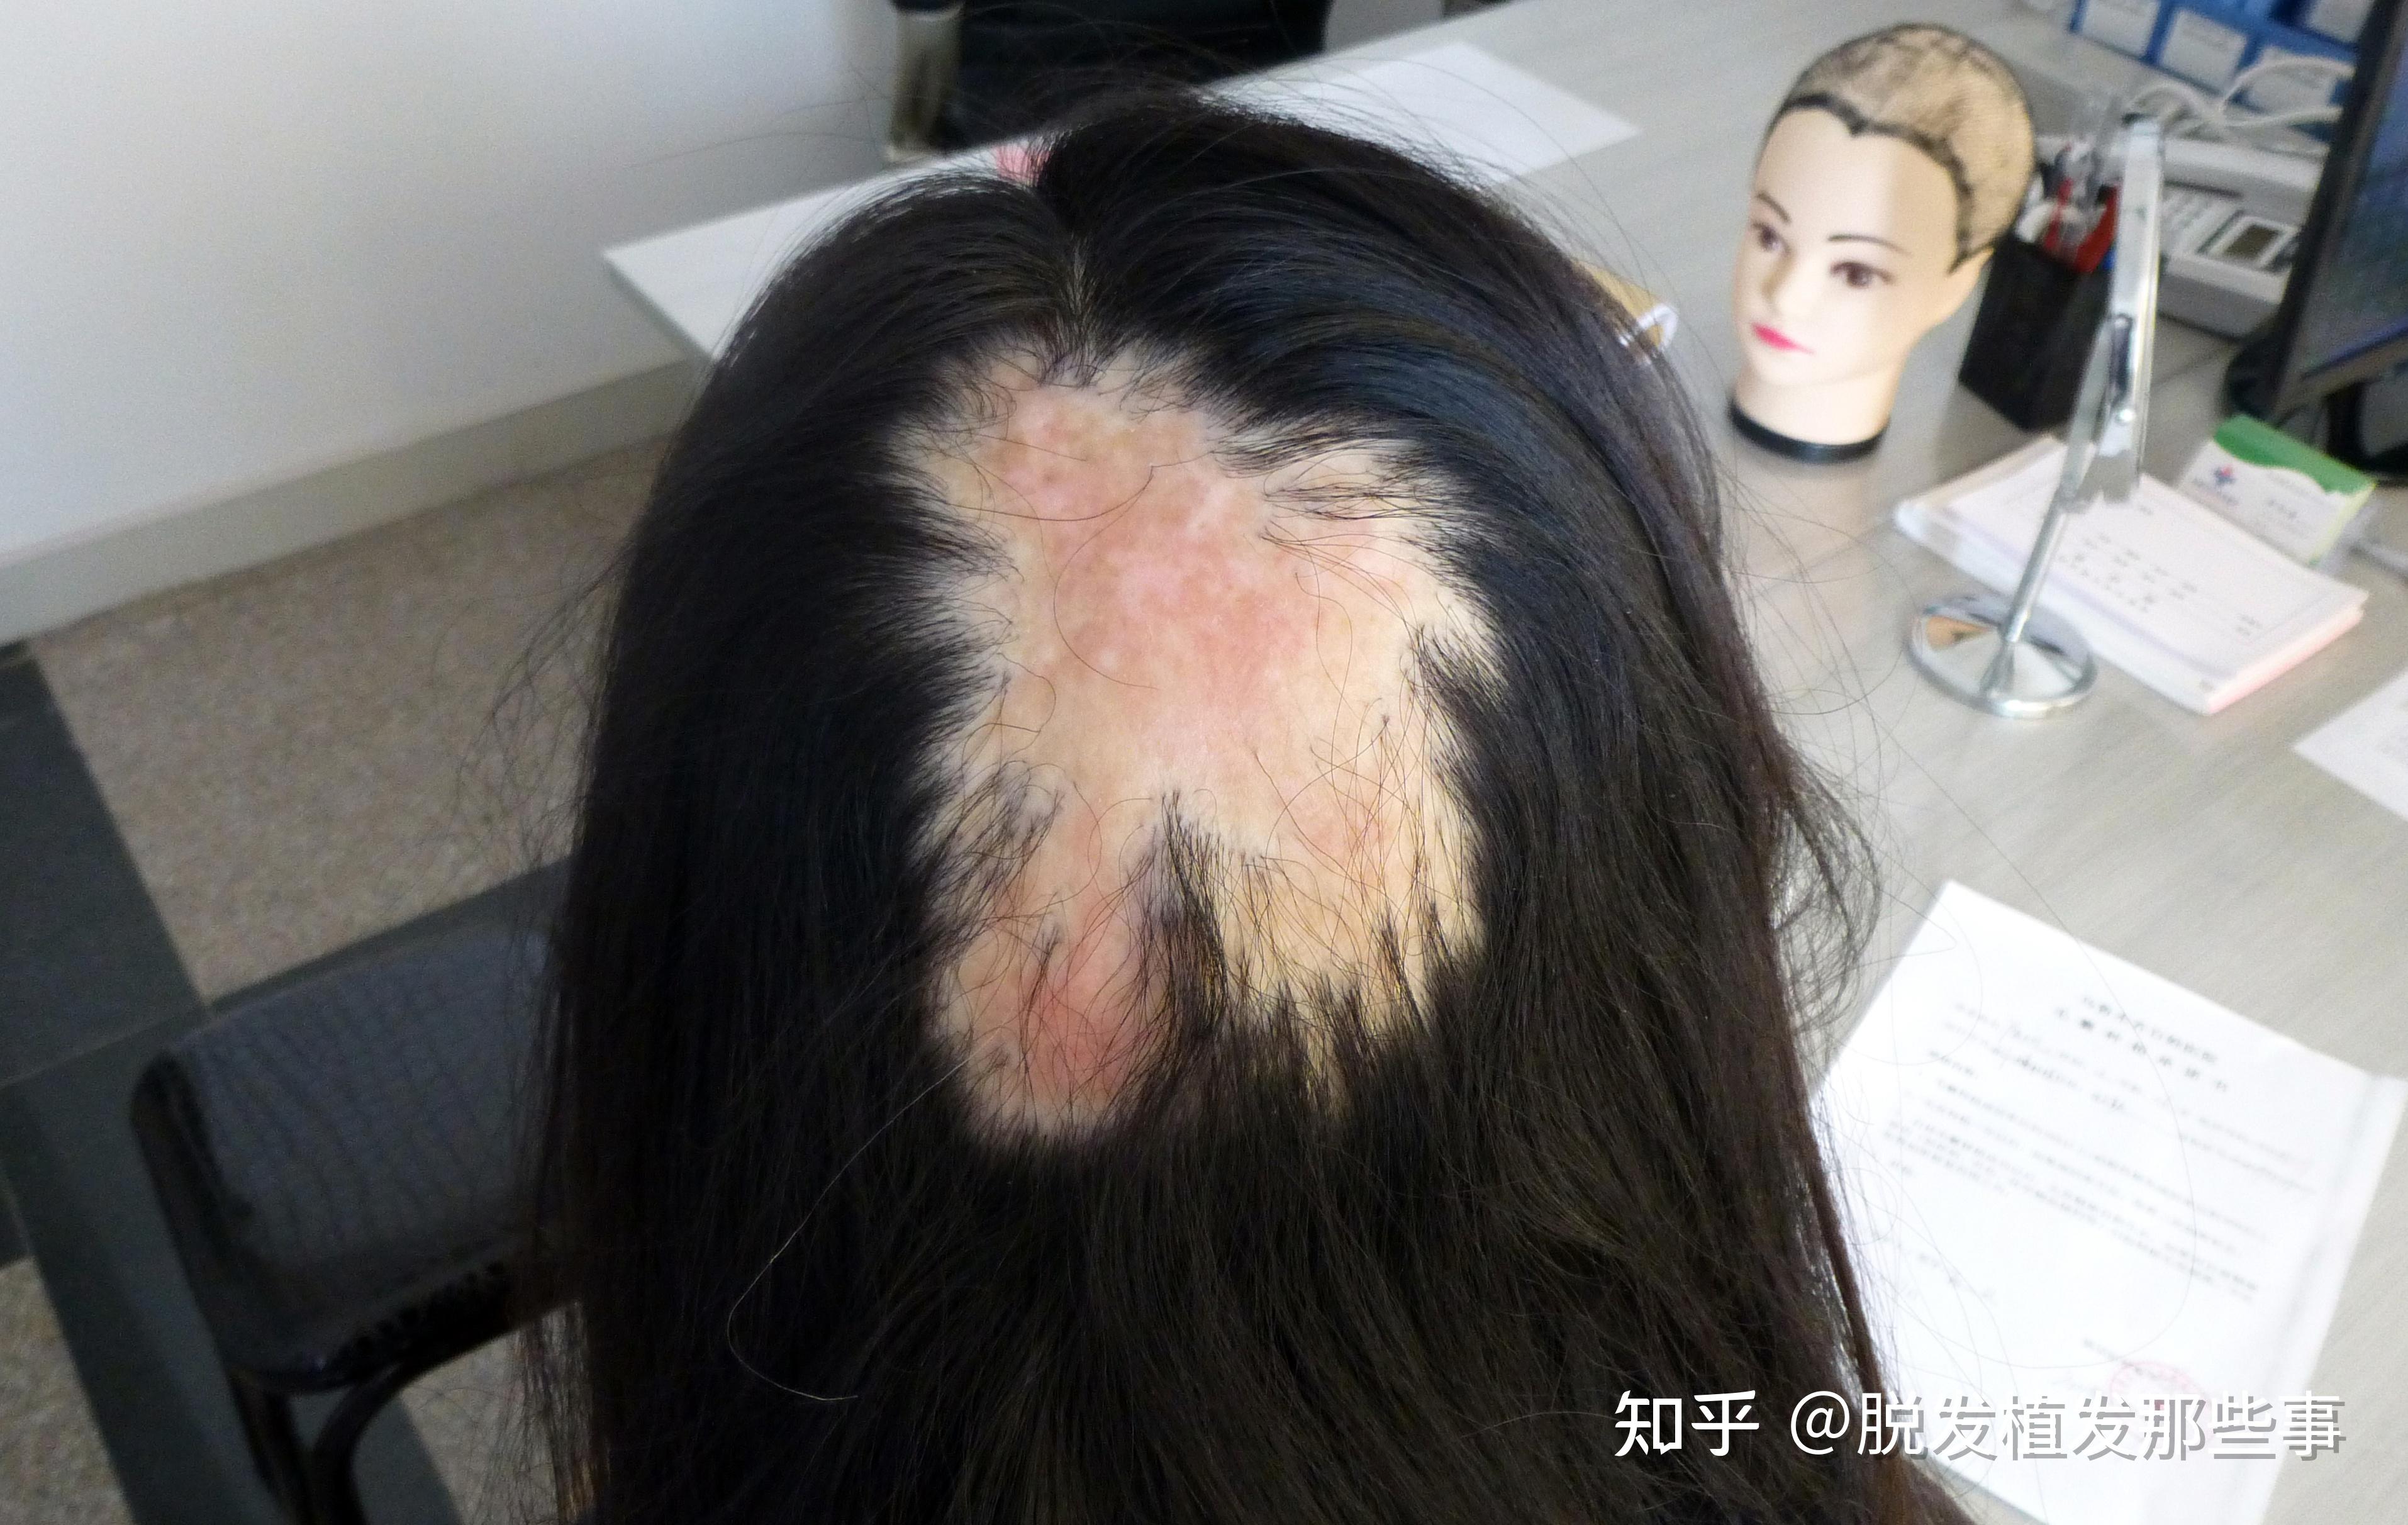 头部14厘米疤痕时隔12年也能修复？ 12岁男童开颅术后“除疤记” - 知乎